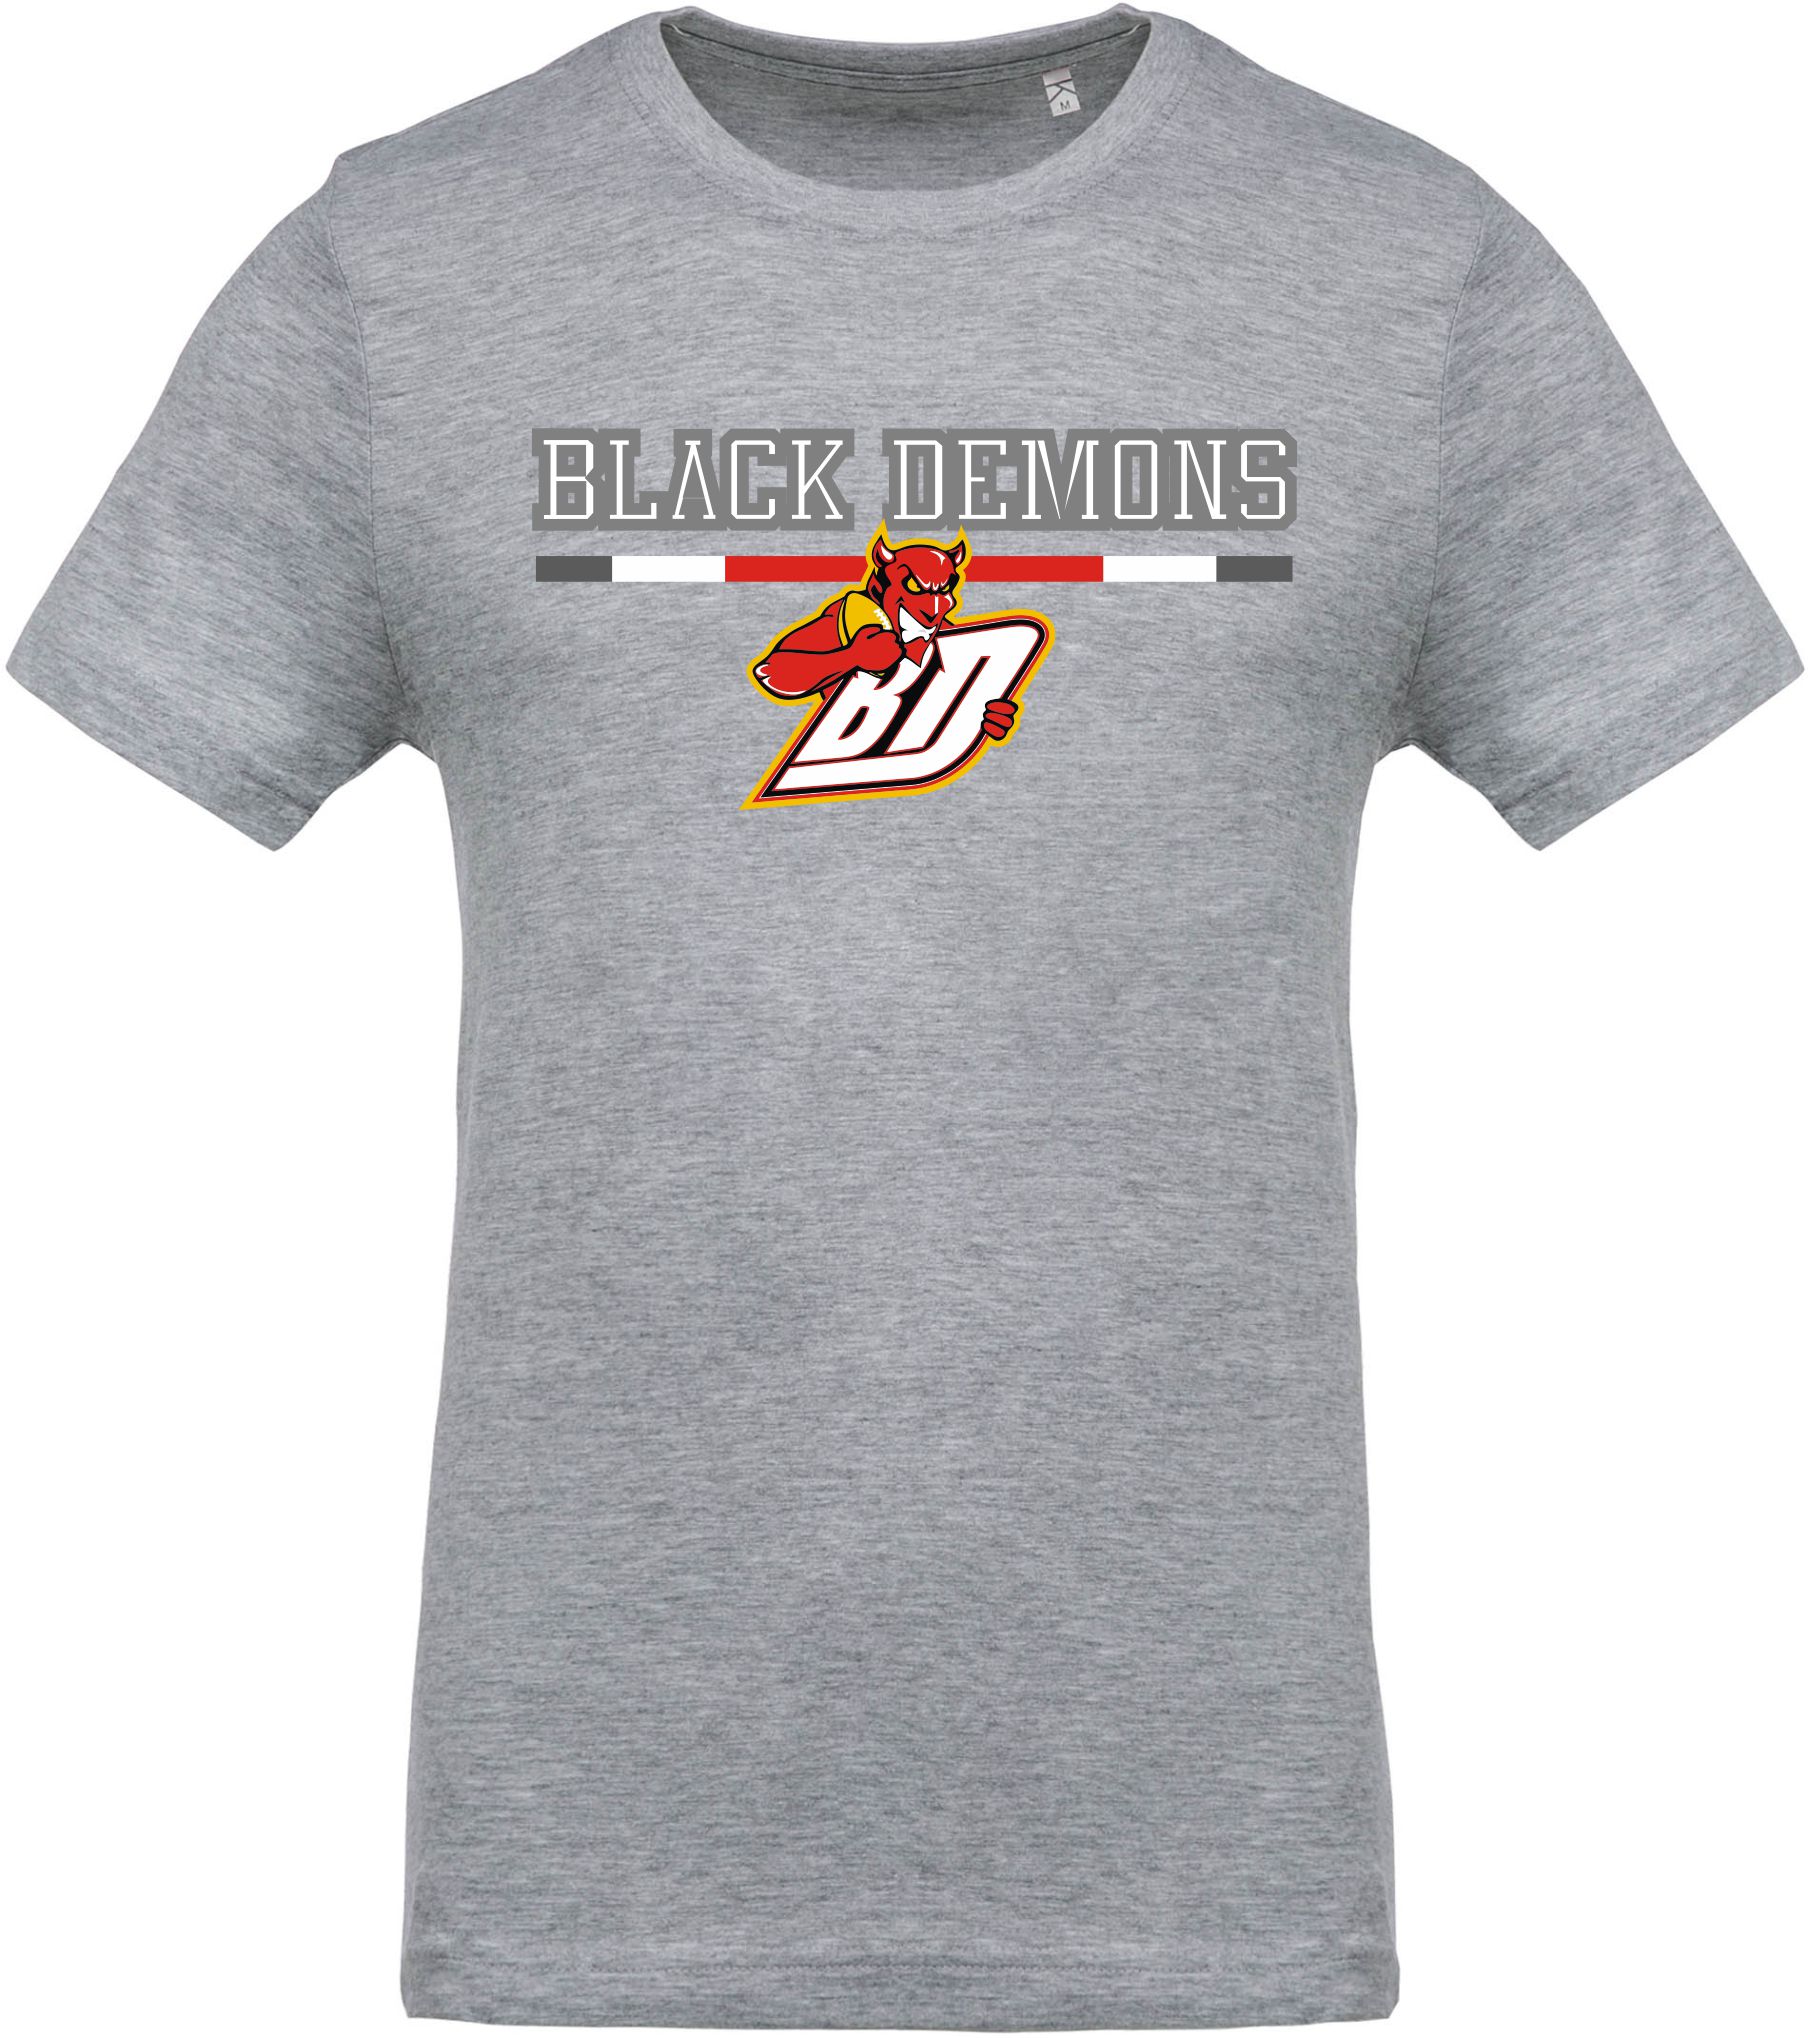 Strepito BD CAM02 Camiseta Oxford Grey, Black Demons franja /logo